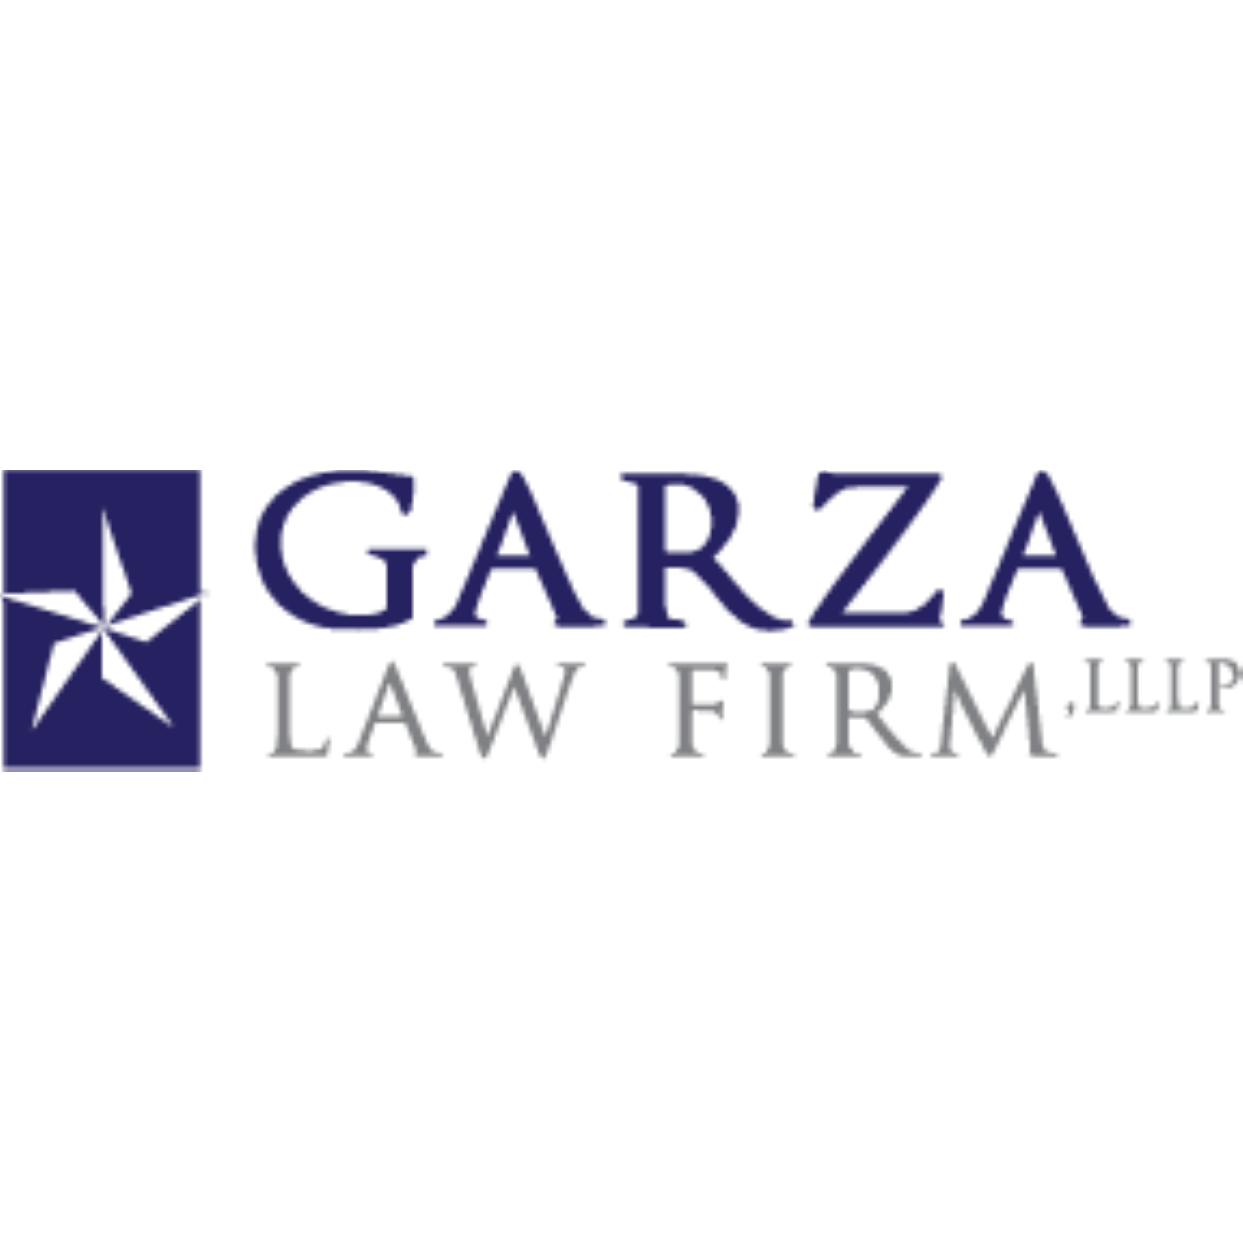 Garza Law Firm, LLLP